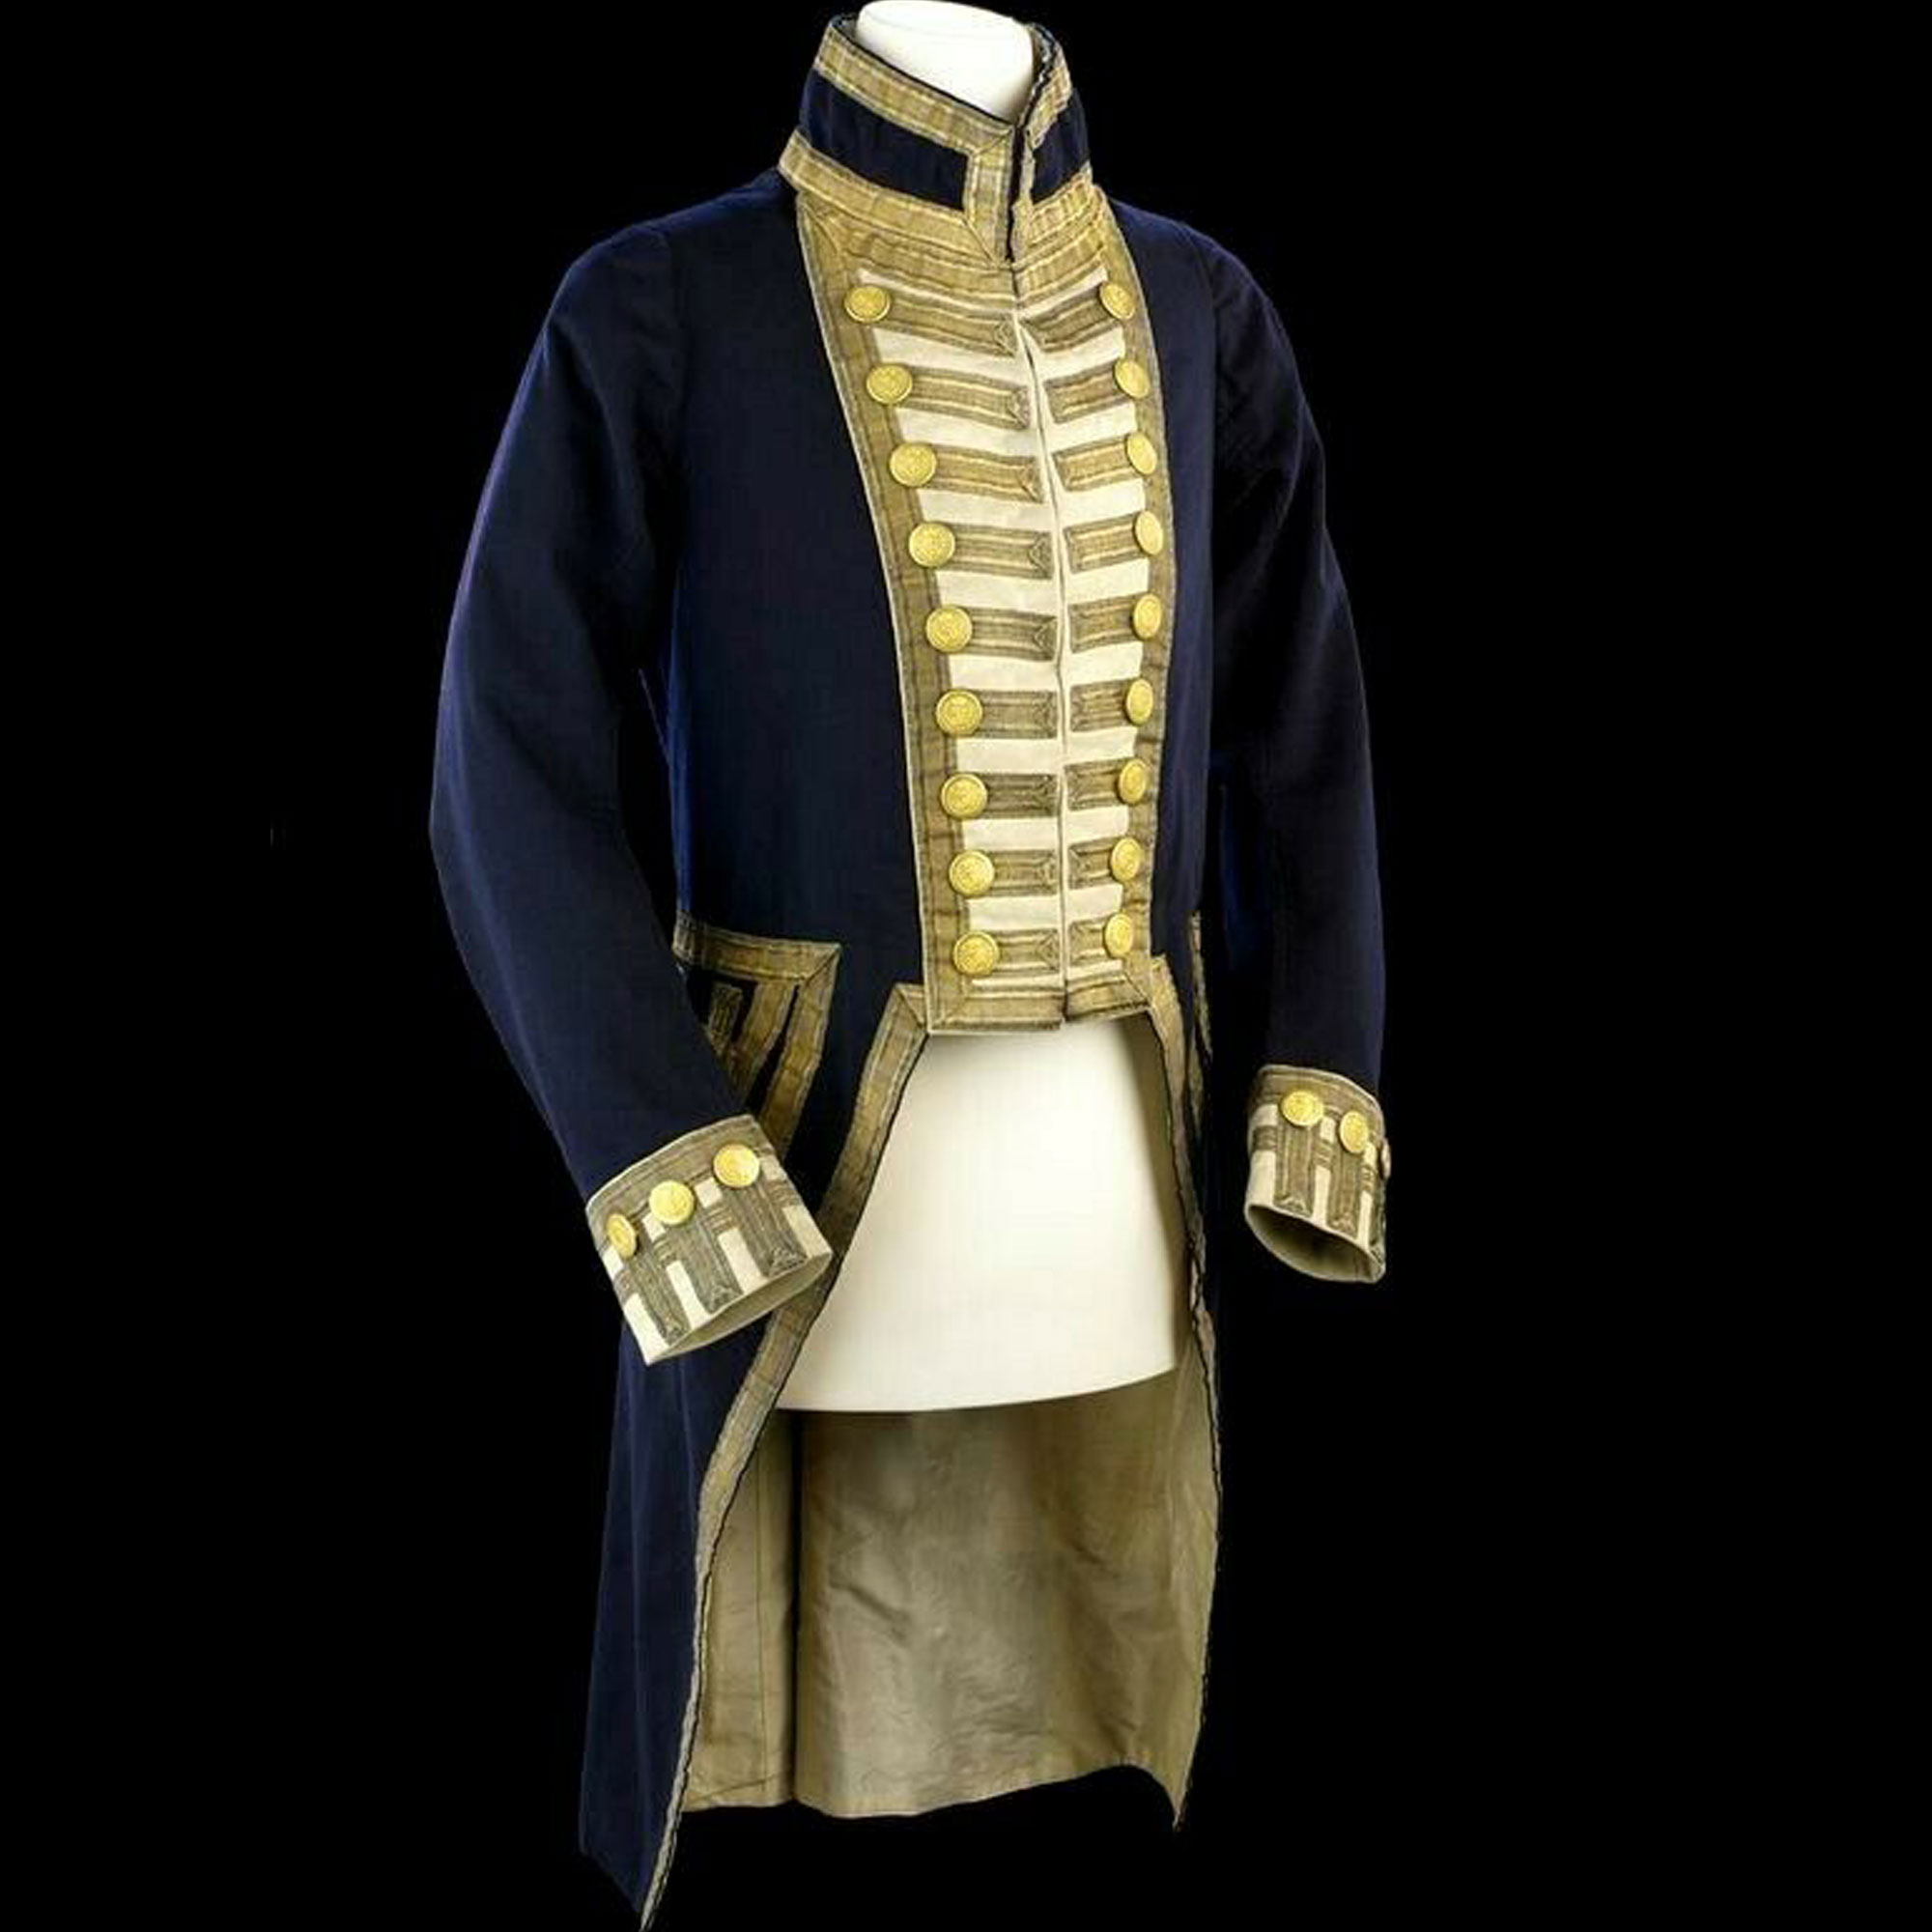 Buy New Regency Personalities Series admiral Military Men Jacket ...